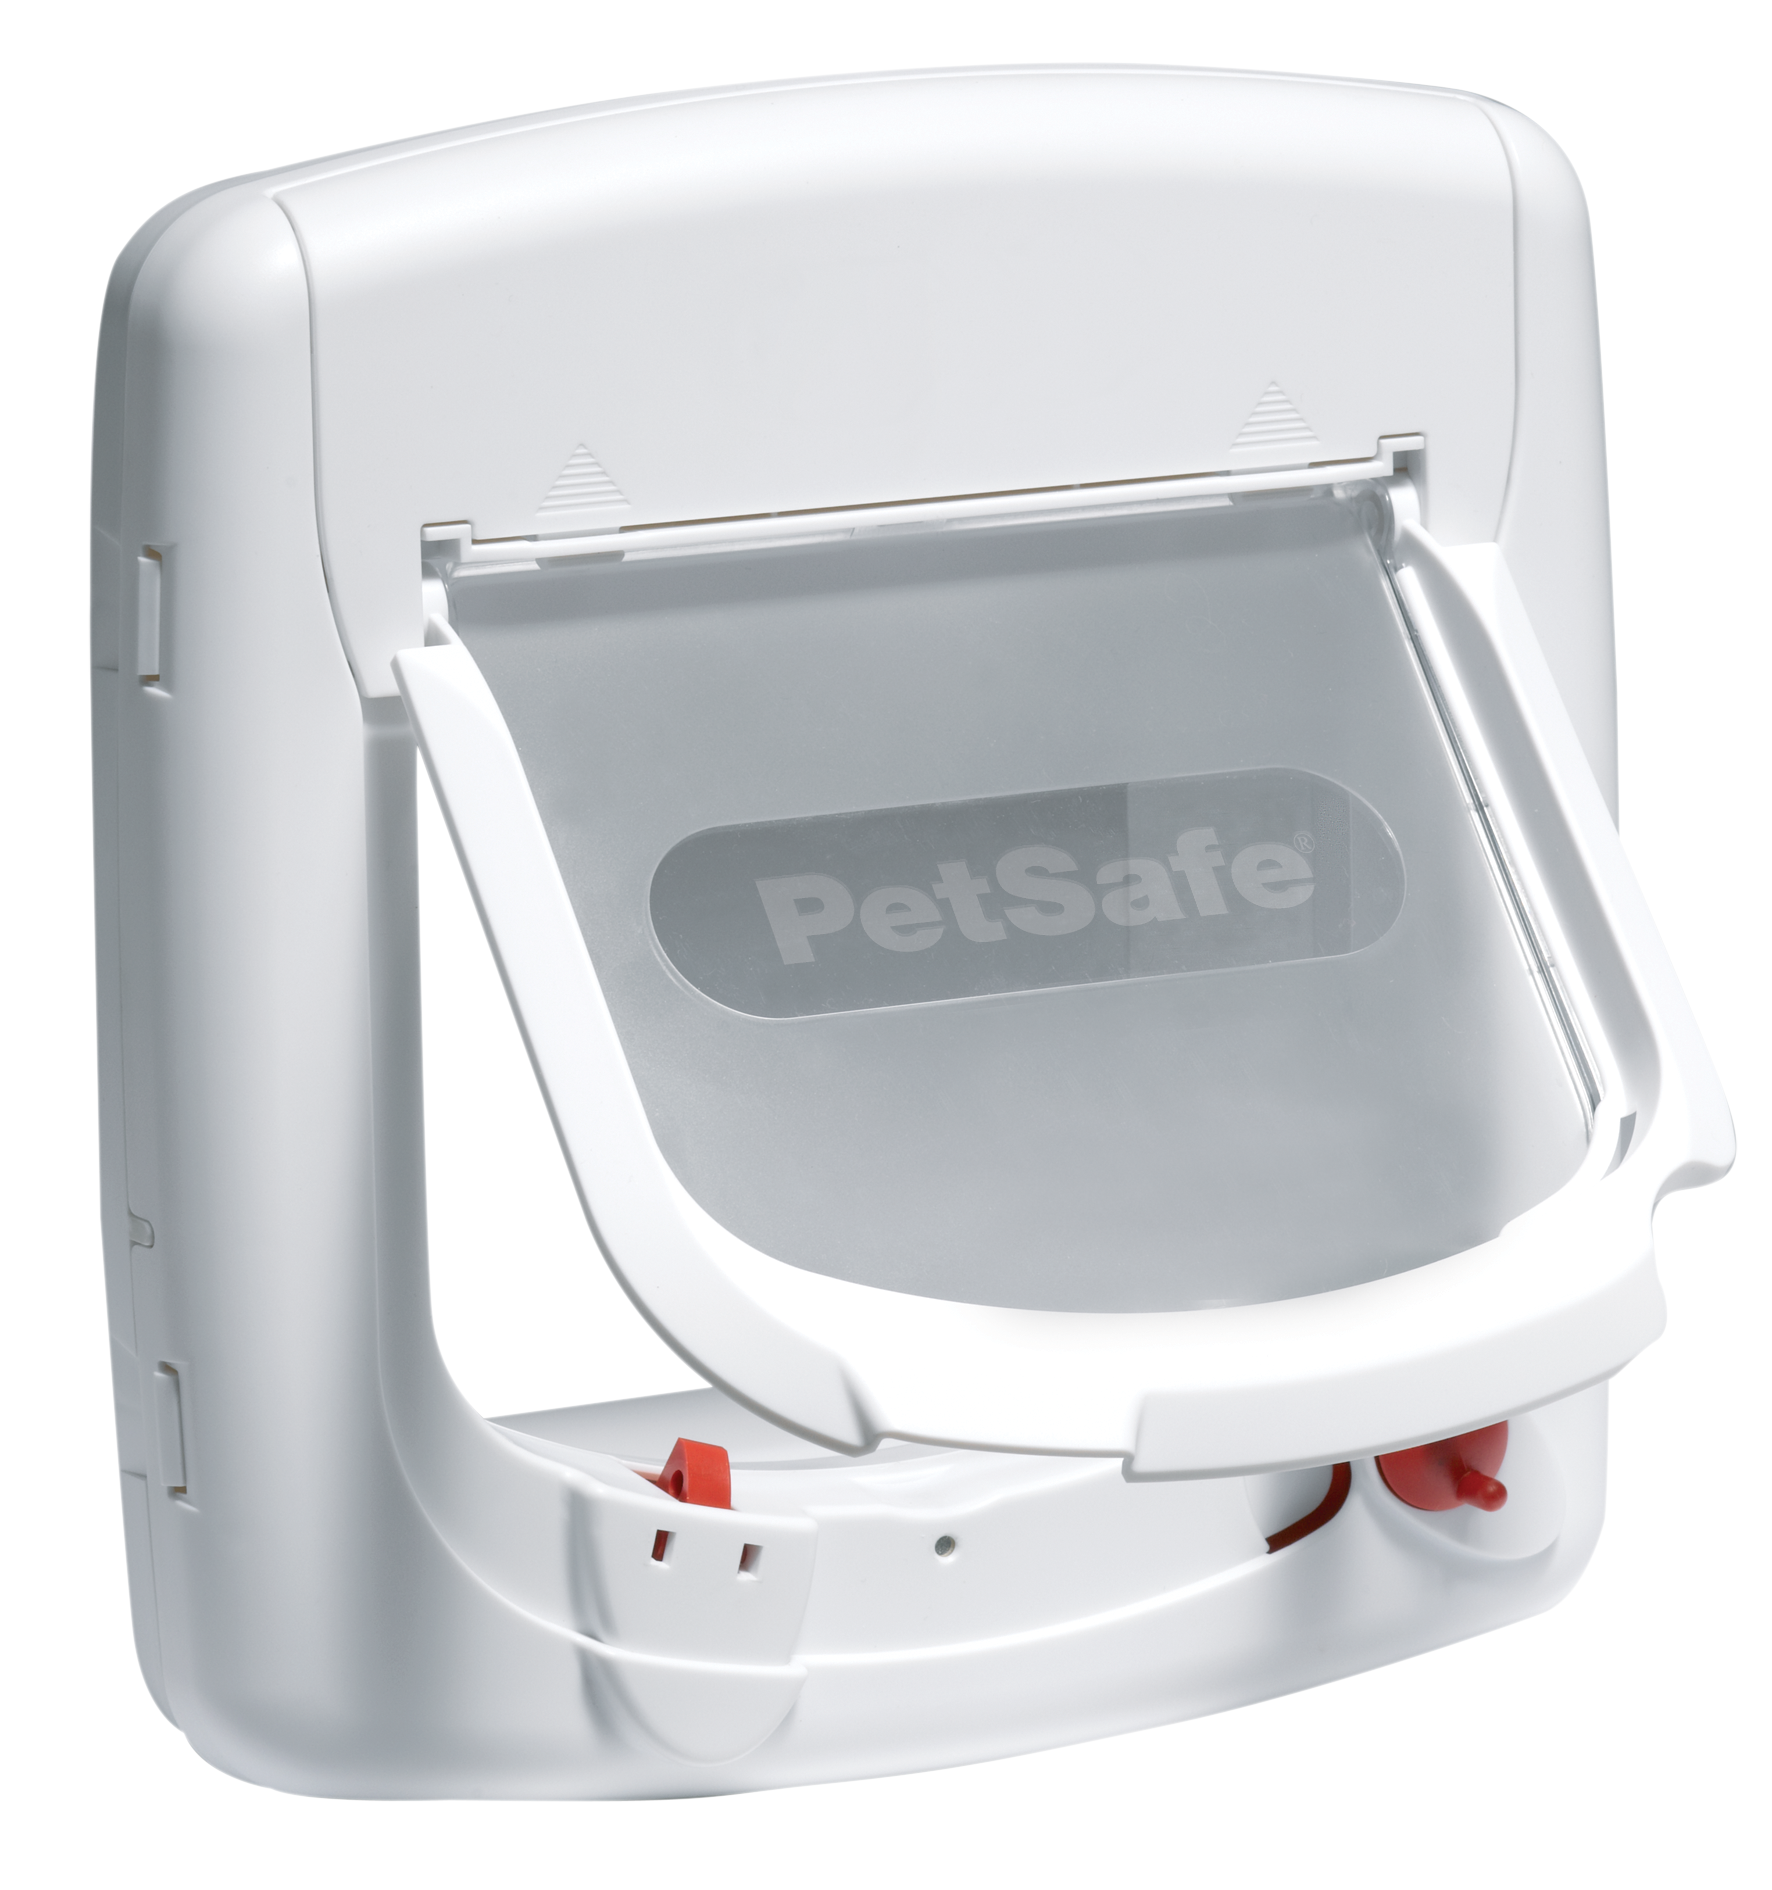 PETSAFE Staywell® Magnetische Deluxe Katzenklappe Weiß Verschlussoptionen, Katzenklappe 4 mit